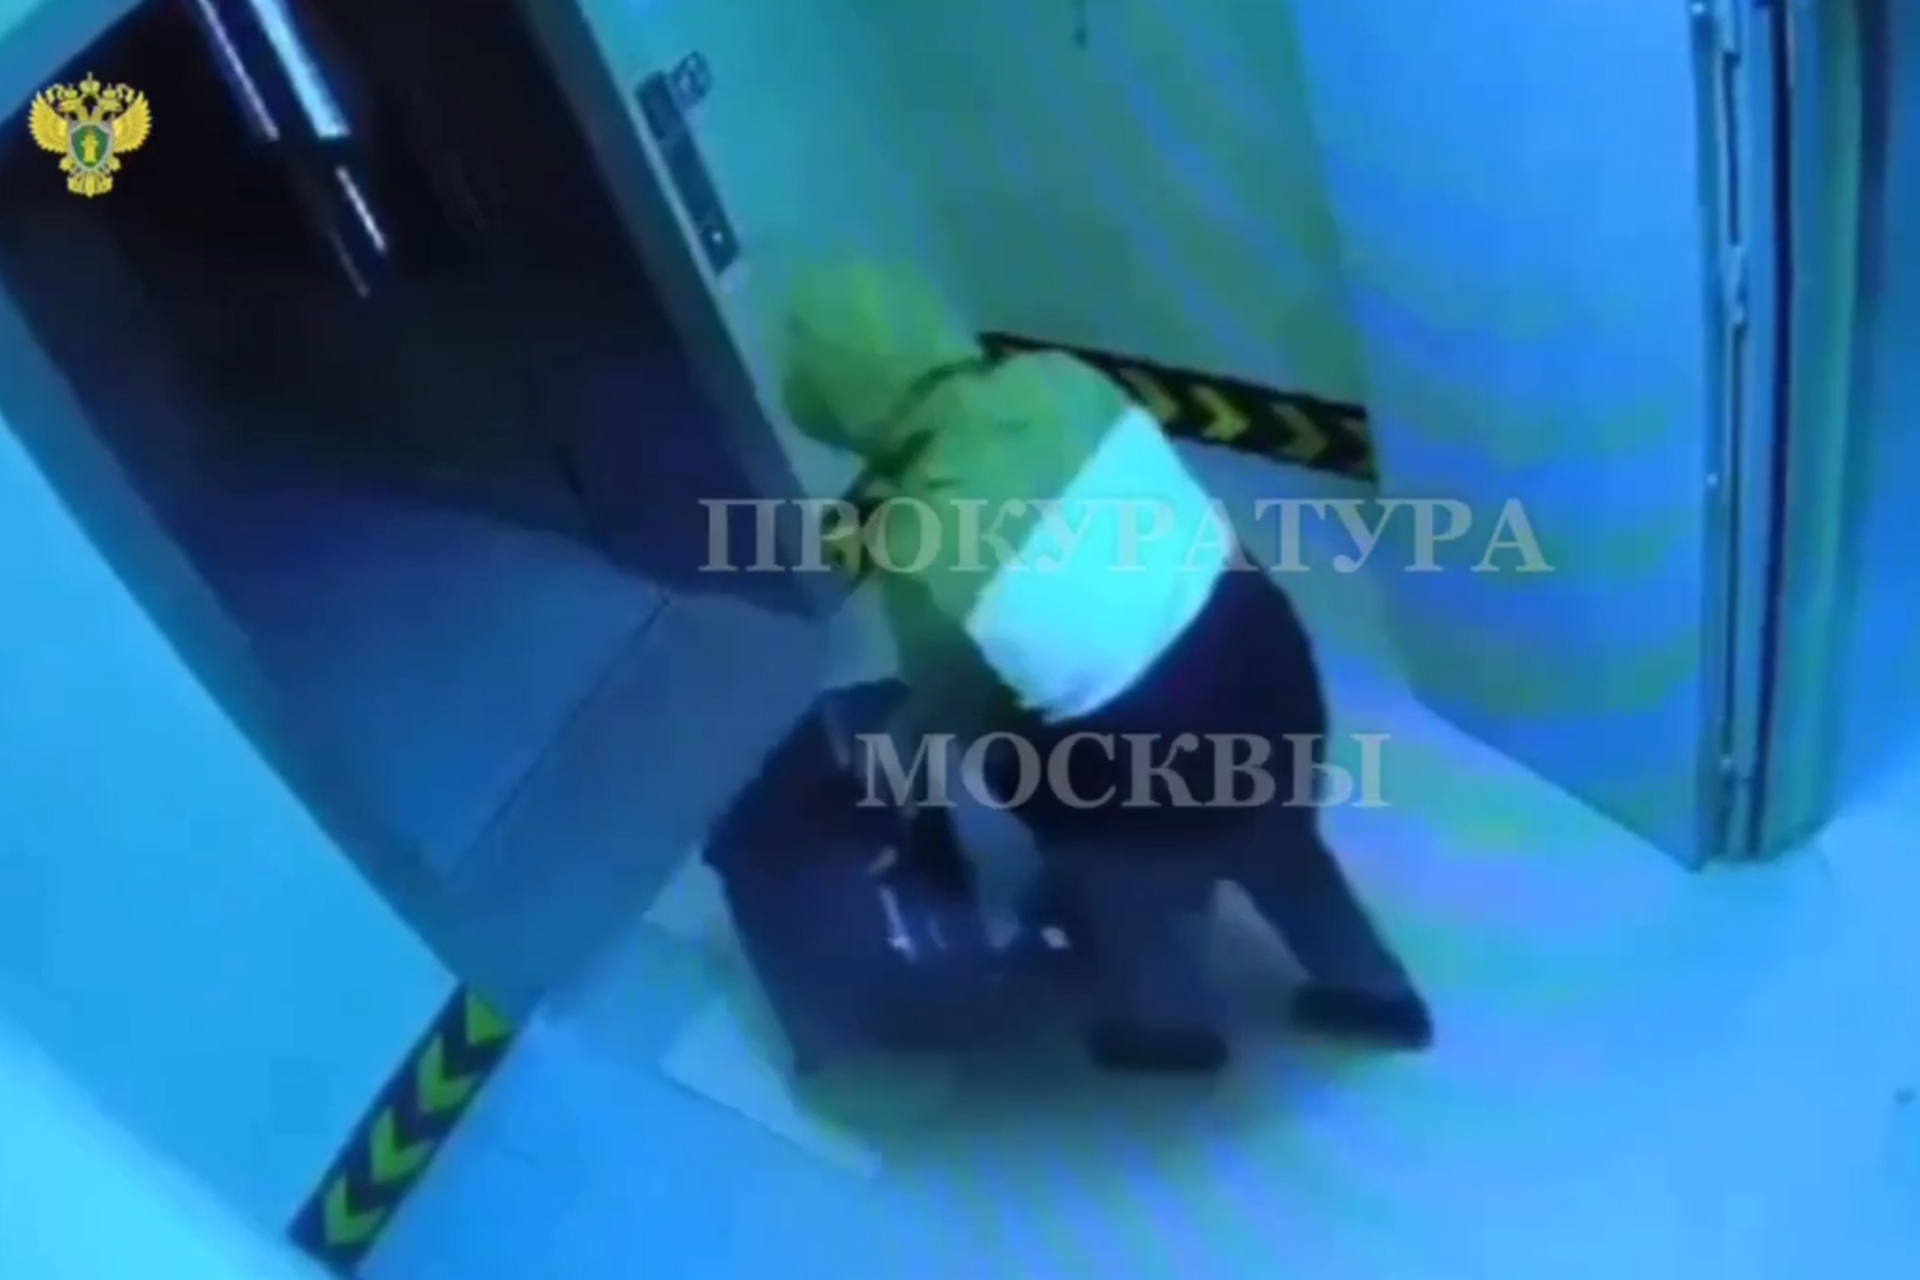 Семейная пара похитила сейф с десятками миллионов из офиса московской компании